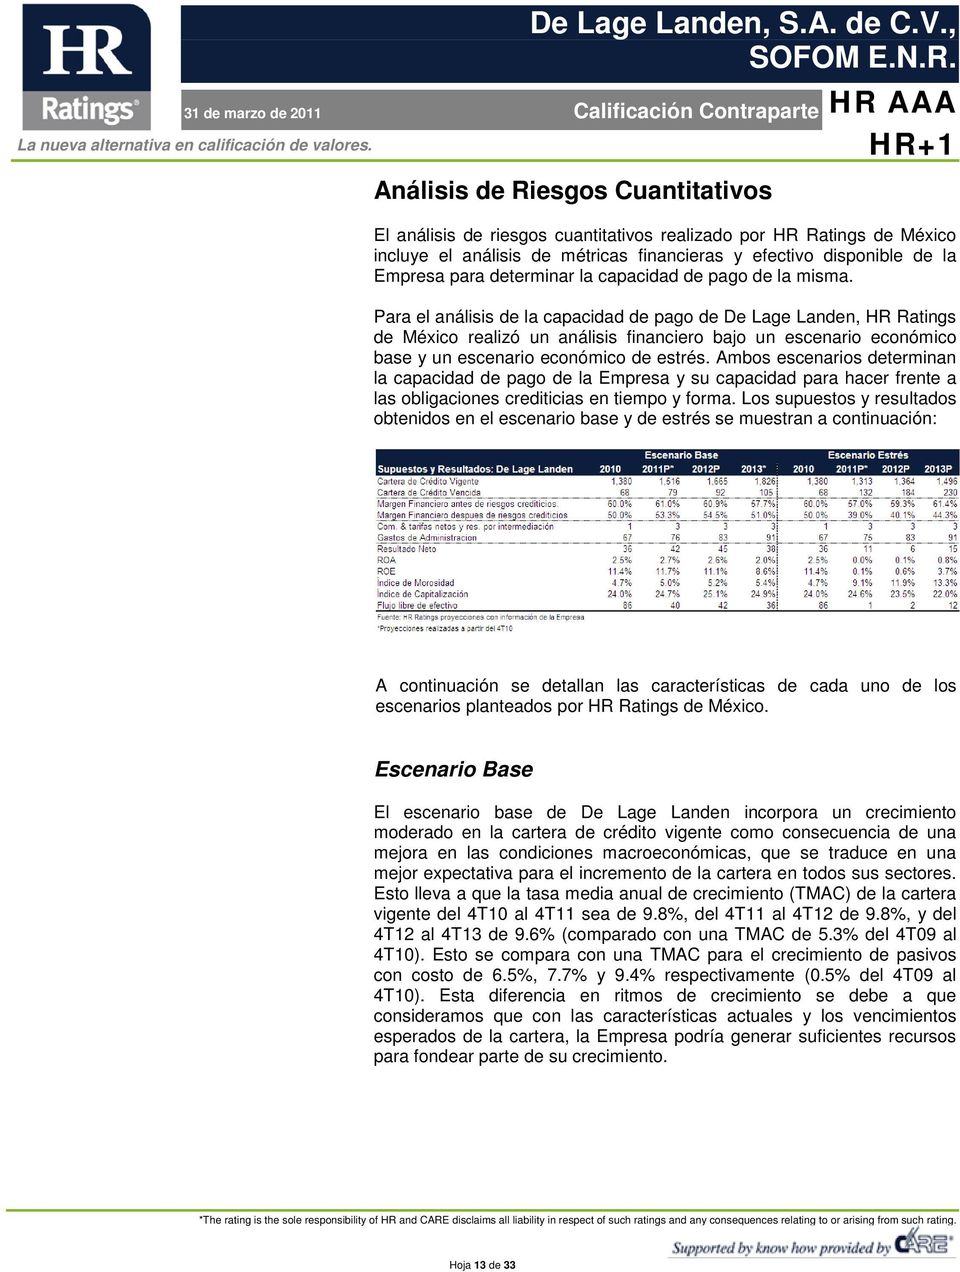 Para el análisis de la capacidad de pago de De Lage Landen, HR Ratings de México realizó un análisis financiero bajo un escenario económico base y un escenario económico de estrés.